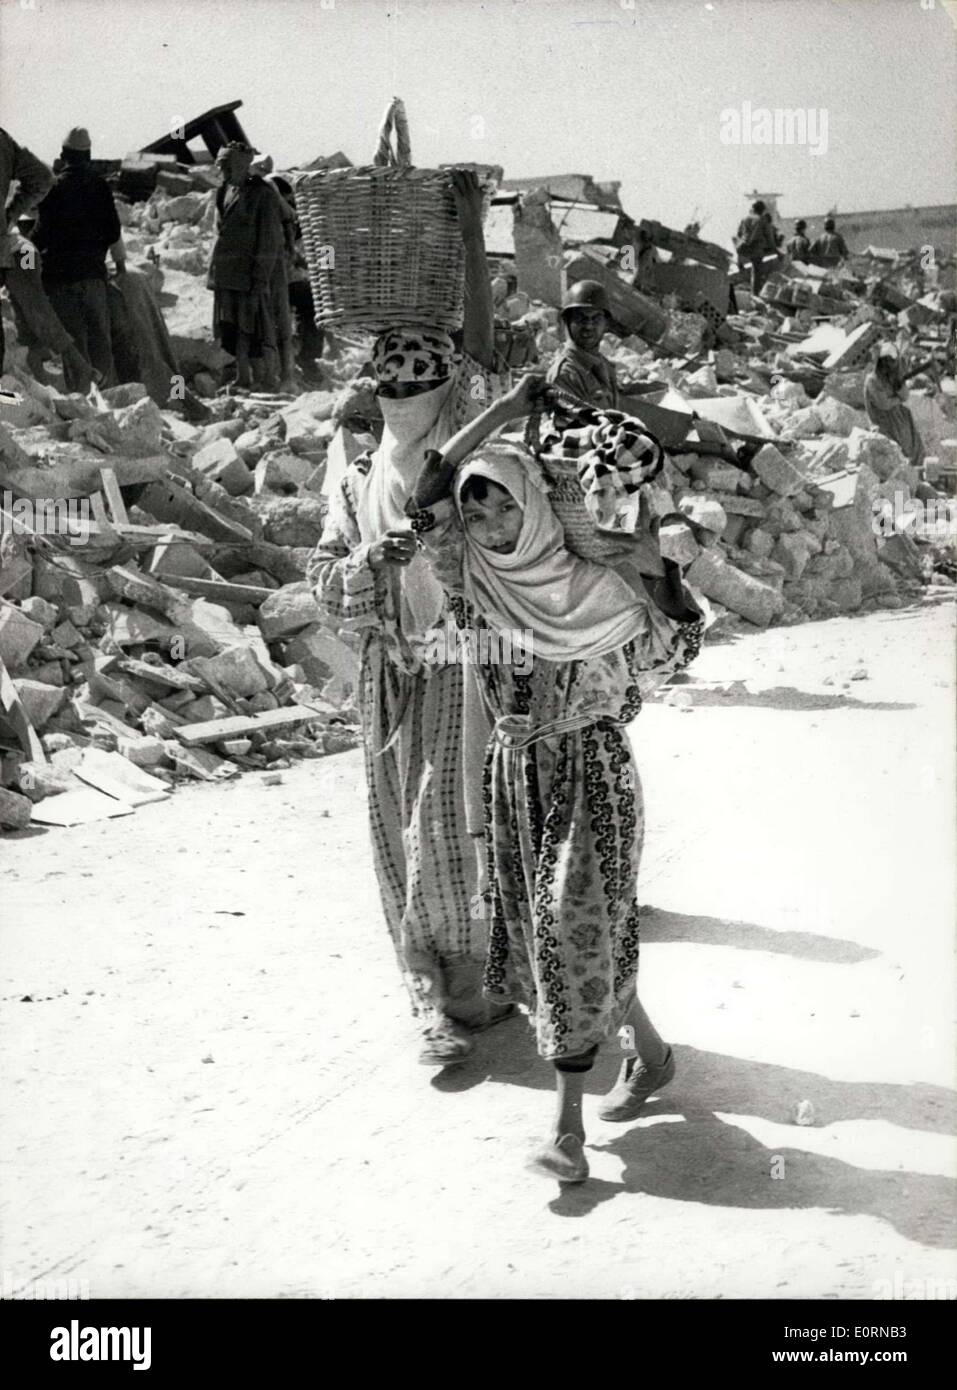 Mar. 04, 1960 - Après le tremblement de terre à Agadir. Ils transportent leurs biens terrestres. Photo montre deux jeunes femmes - avec tout ce qu'ils pouvaient sauver de leurs maisons - vu avec bâtiments détruits derrière - après le earthquakeat Agadir, Maroc., plus de 5 000 chemins permet pour morts. Banque D'Images